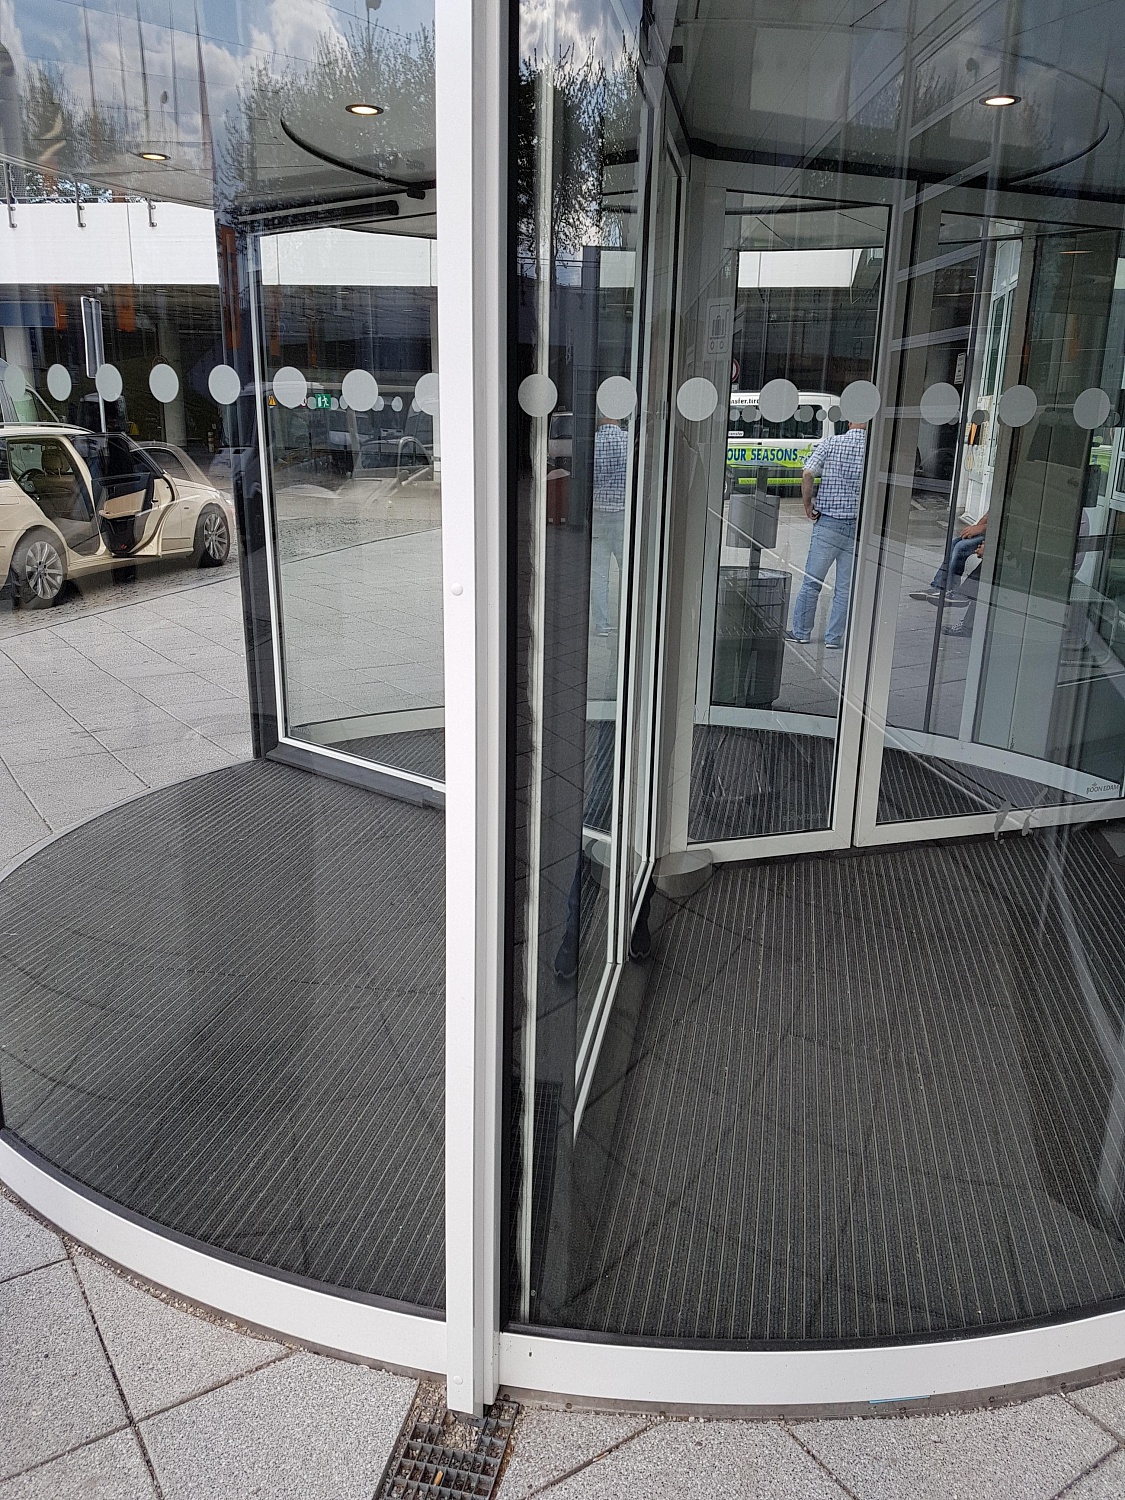 Заказать установку автоматических дверей в Сочи. Монтаж выполняется командой профессионалов с опытом работы более 9 лет. 